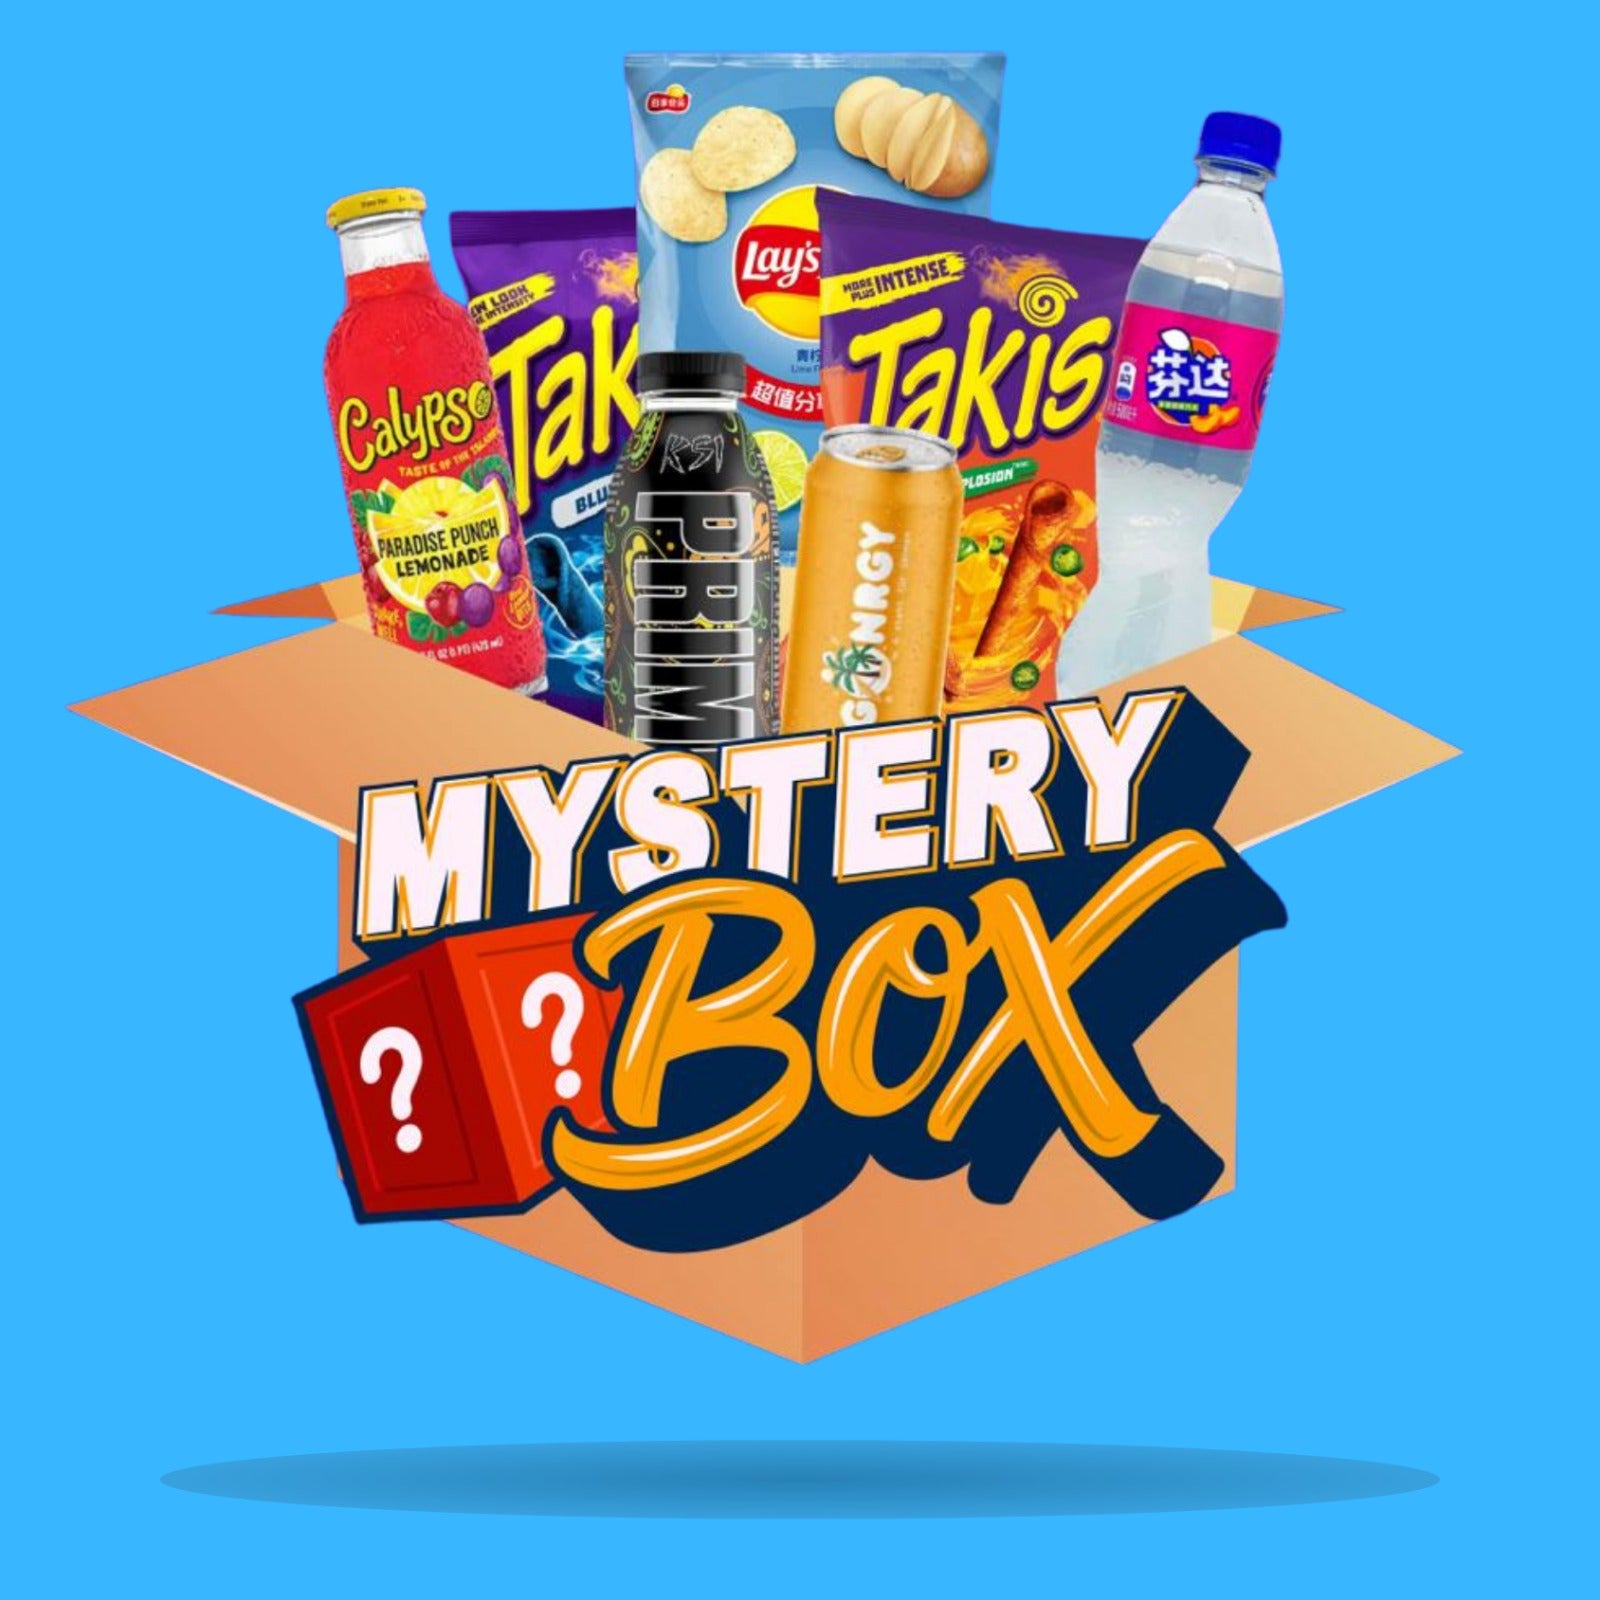 Entdecke mit unserer exklusiven Mystery Box eine Welt der Geschmacksvielfalt! Für nur 25€ erhältst du eine sorgfältig zusammengestellte Auswahl an internationalen Süßigkeiten, erfrischenden Getränken und herzhaften Snacks im Wert von 30€.